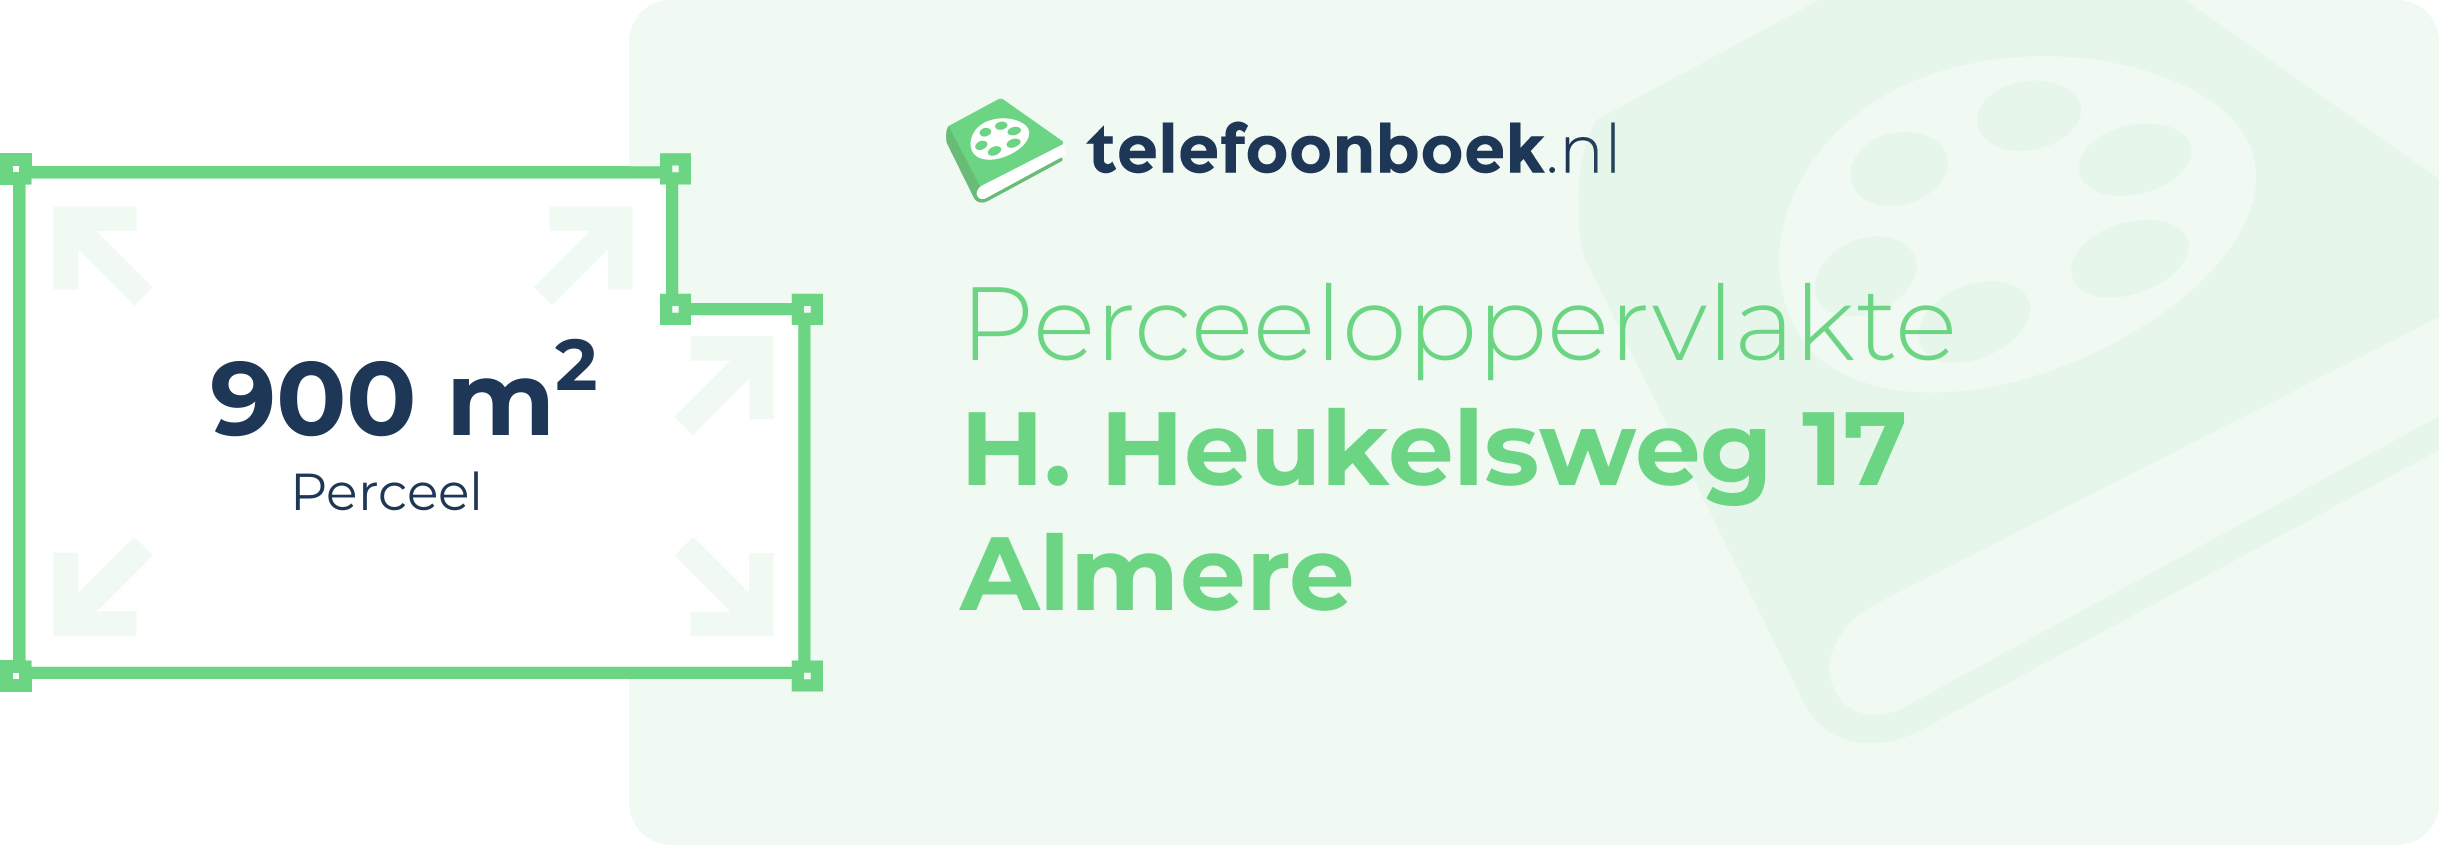 Perceeloppervlakte H. Heukelsweg 17 Almere